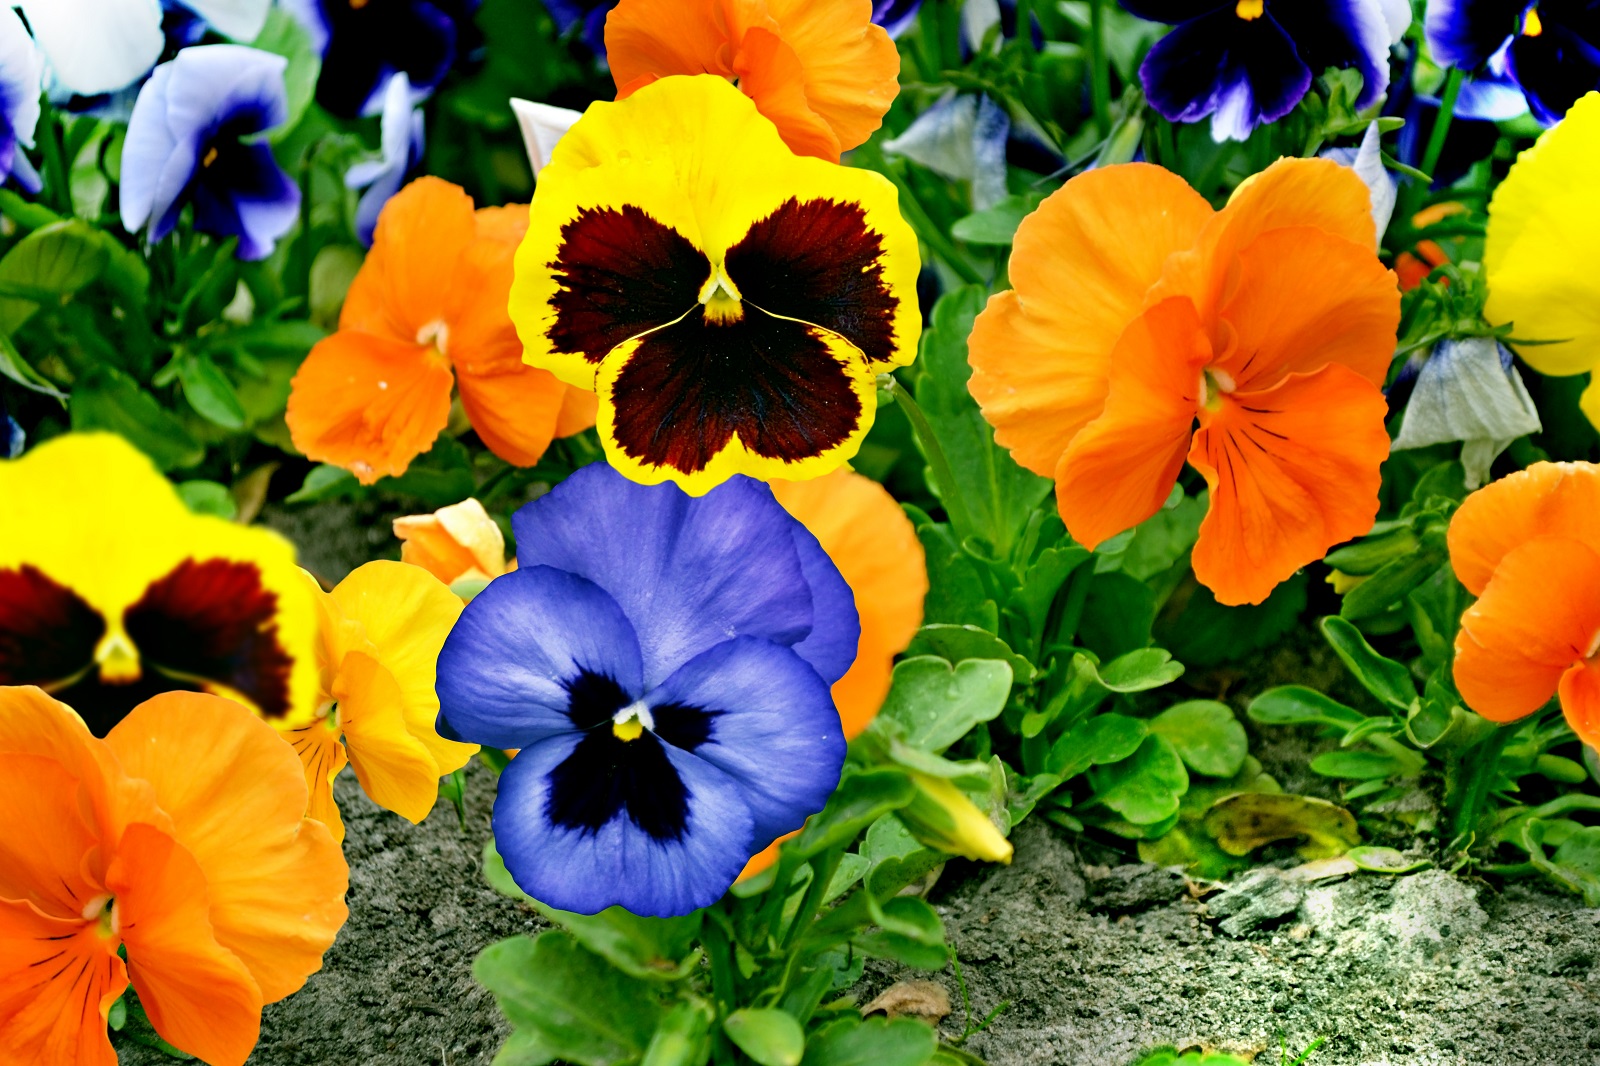 Apporter des couleurs au jardin avec les pensées. © alenalihacheva, Adobe Stock